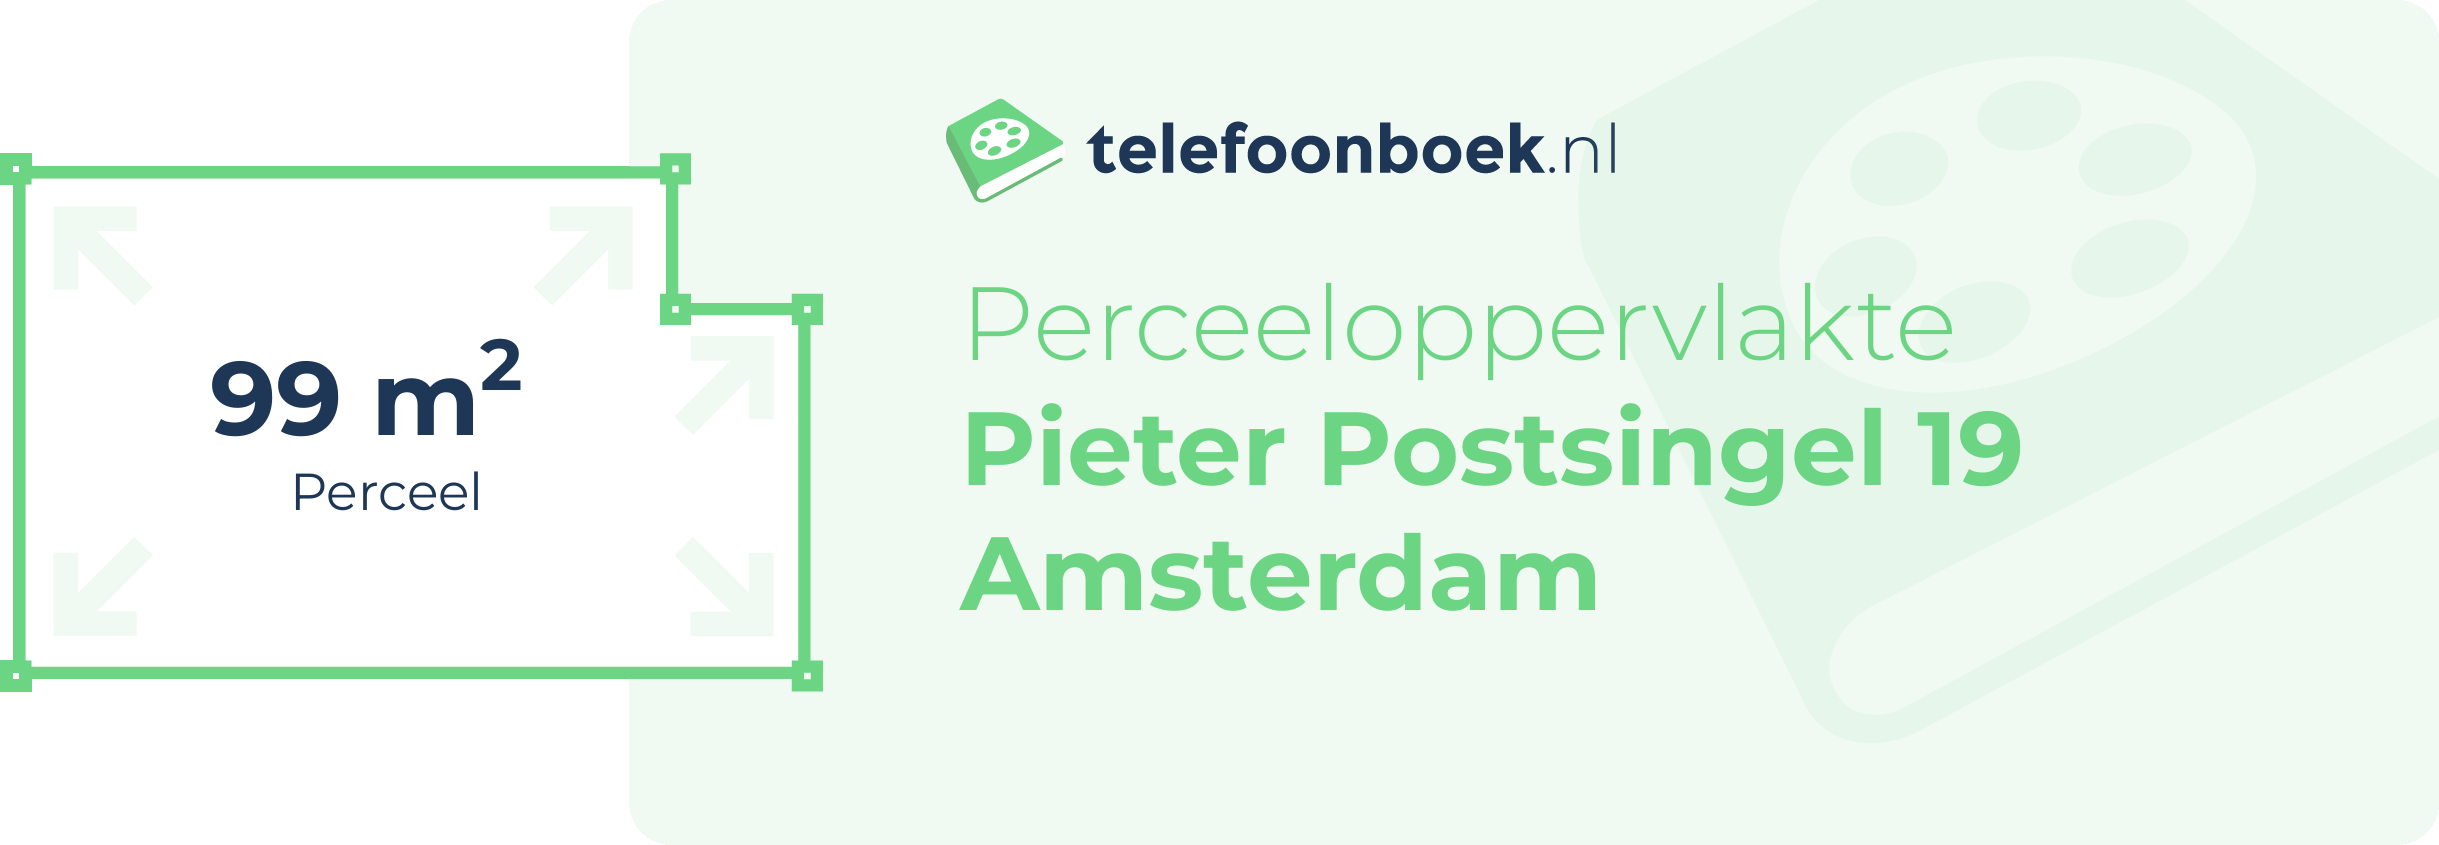 Perceeloppervlakte Pieter Postsingel 19 Amsterdam